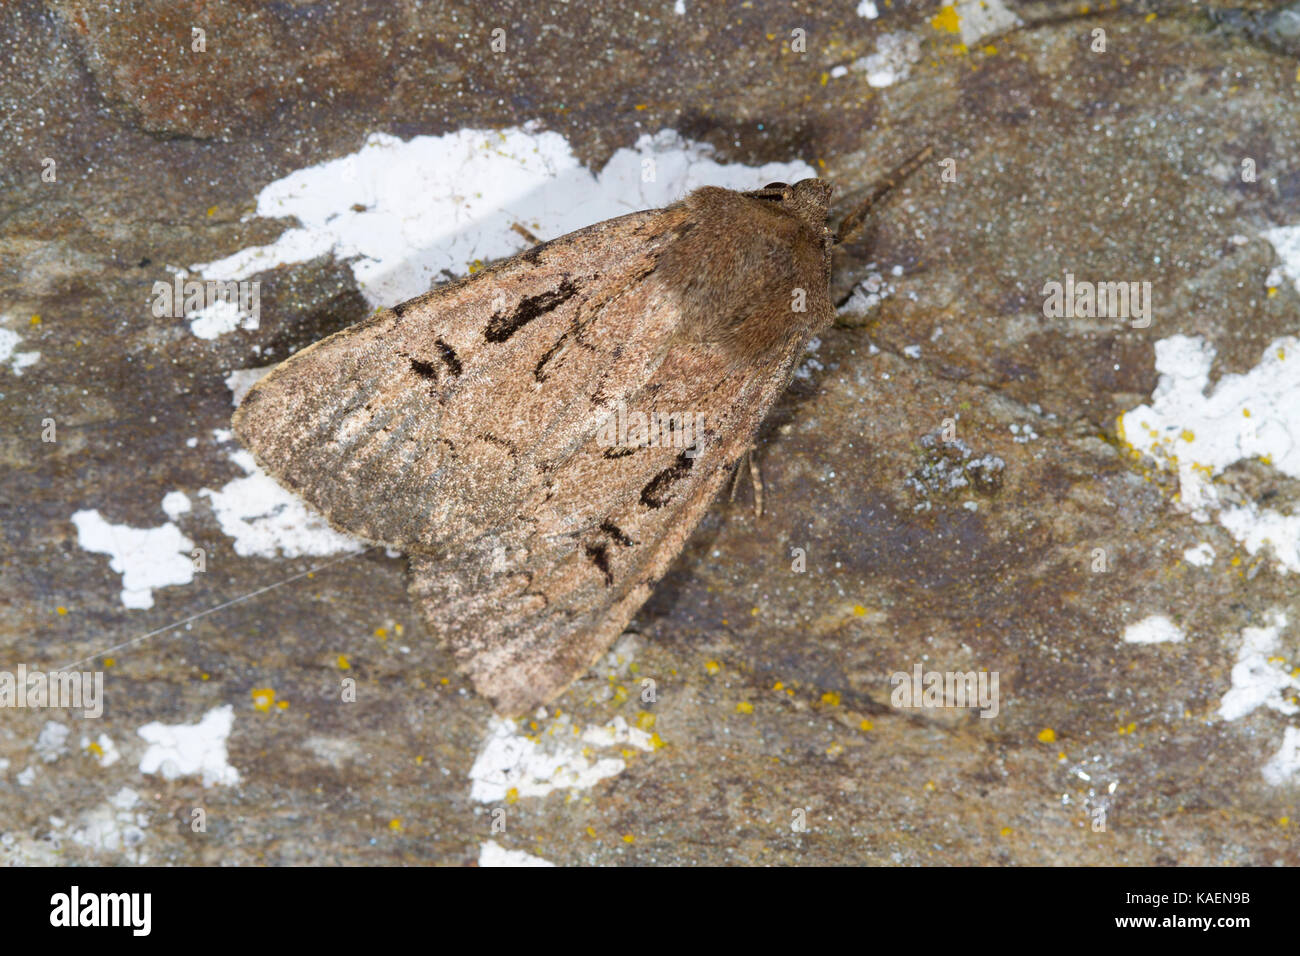 Dart (Graphiphora double de bon augure) papillon adulte reposant sur un mur. Powys, Pays de Galles. Juillet. Banque D'Images